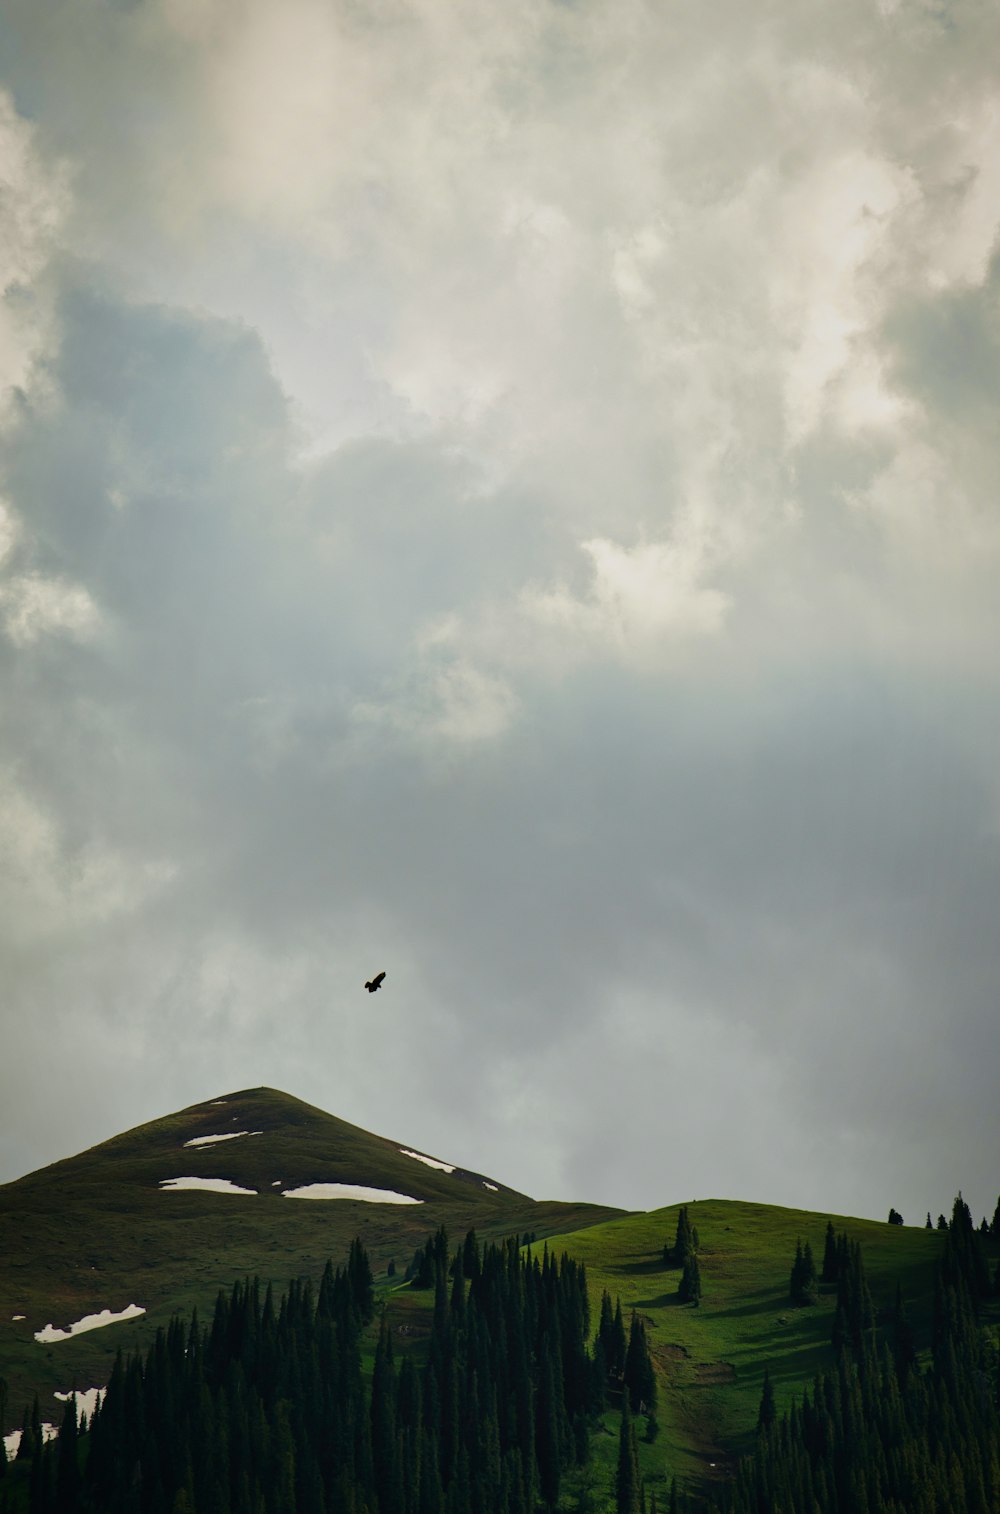 Un pájaro volando sobre una exuberante ladera verde bajo un cielo nublado